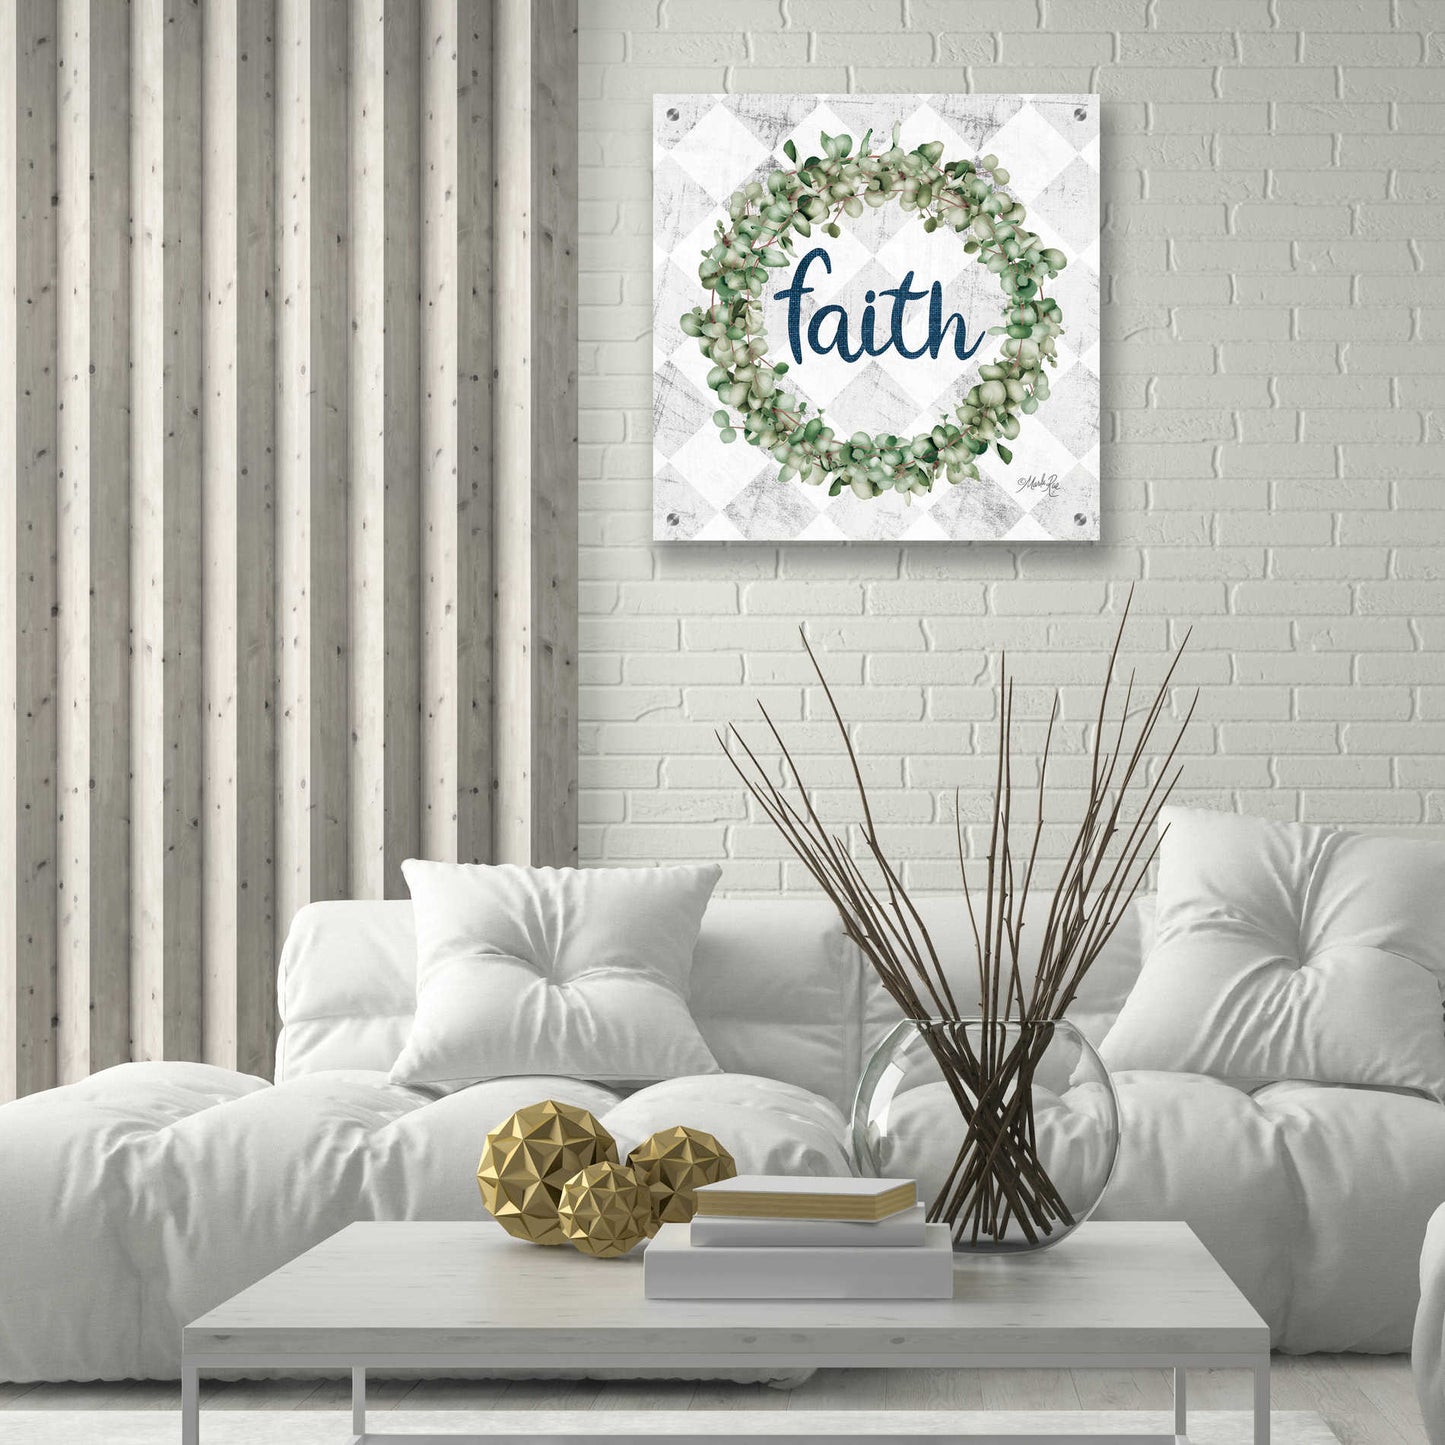 Epic Art 'Faith Eucalyptus Wreath' by Marla Rae, Acrylic Glass Wall Art,24x24